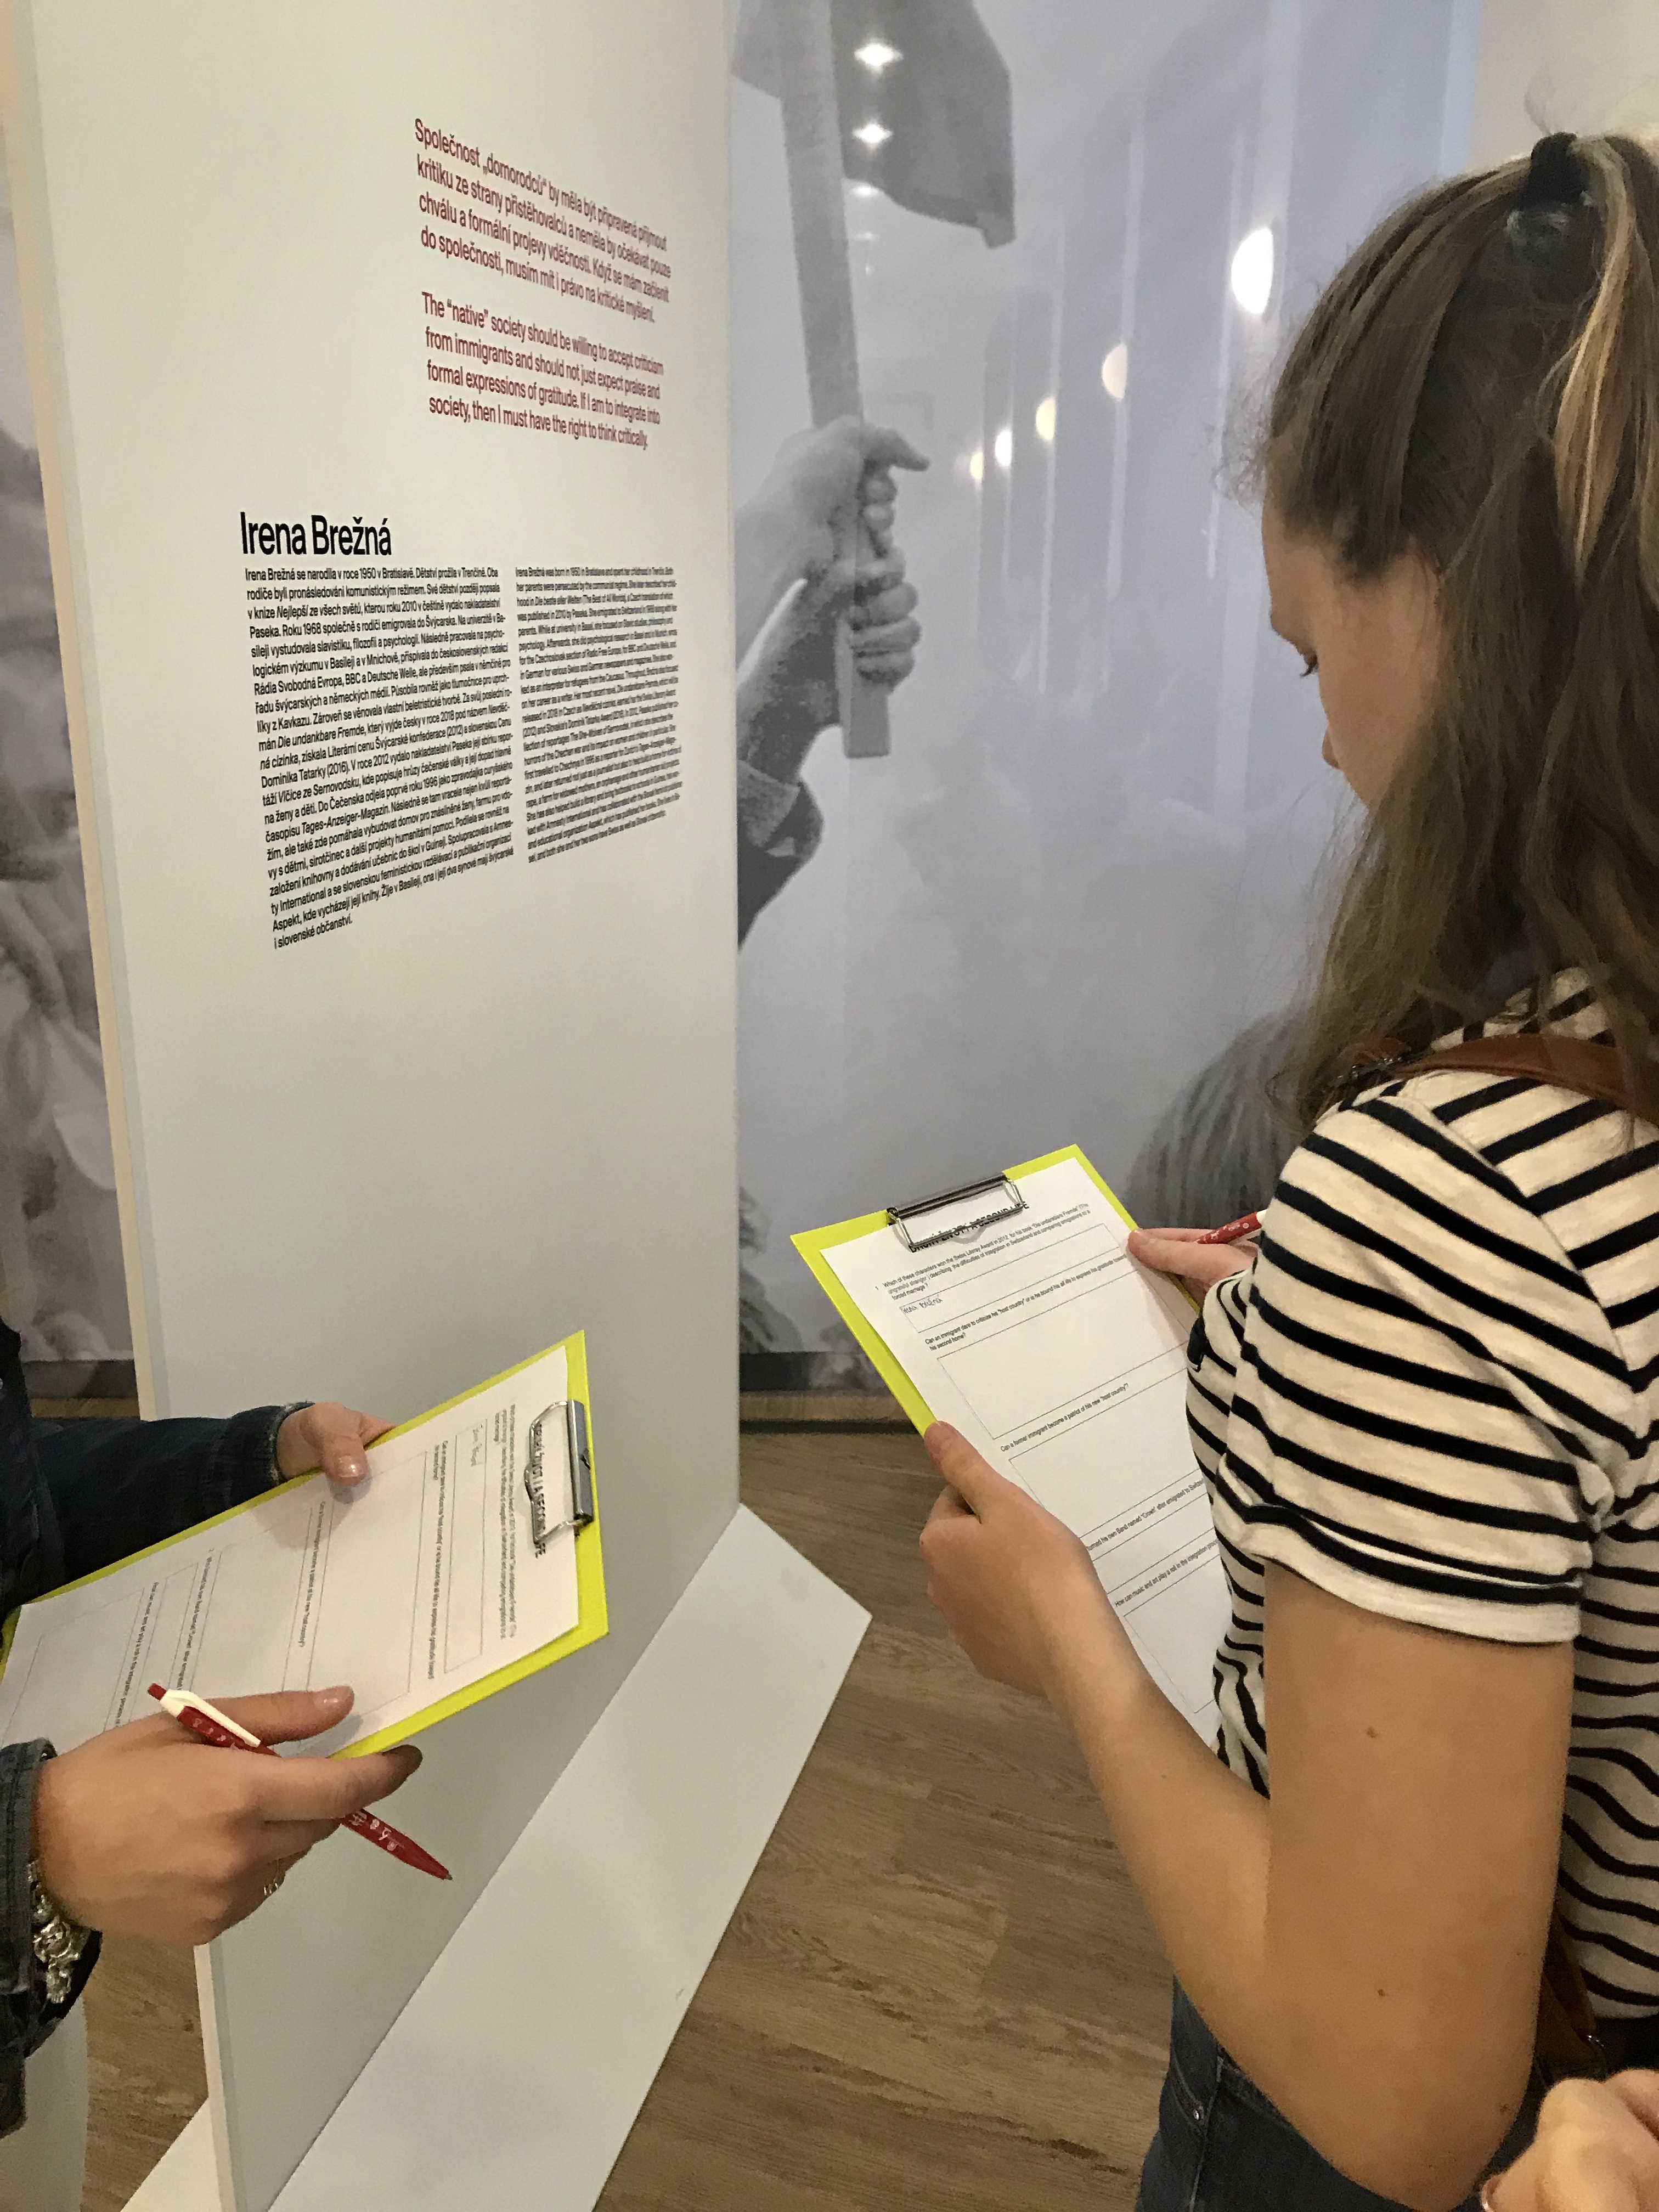 Am 12.04. 2018 haben die Ausstellung 58 Schüler des Englisch-tschechischen Gymnasiums Amazon besucht. Sie haben mit den Mitarbeitern der Botschaft das speziell für sie vorbereitete Programm zum Thema Heimat mitgemacht.